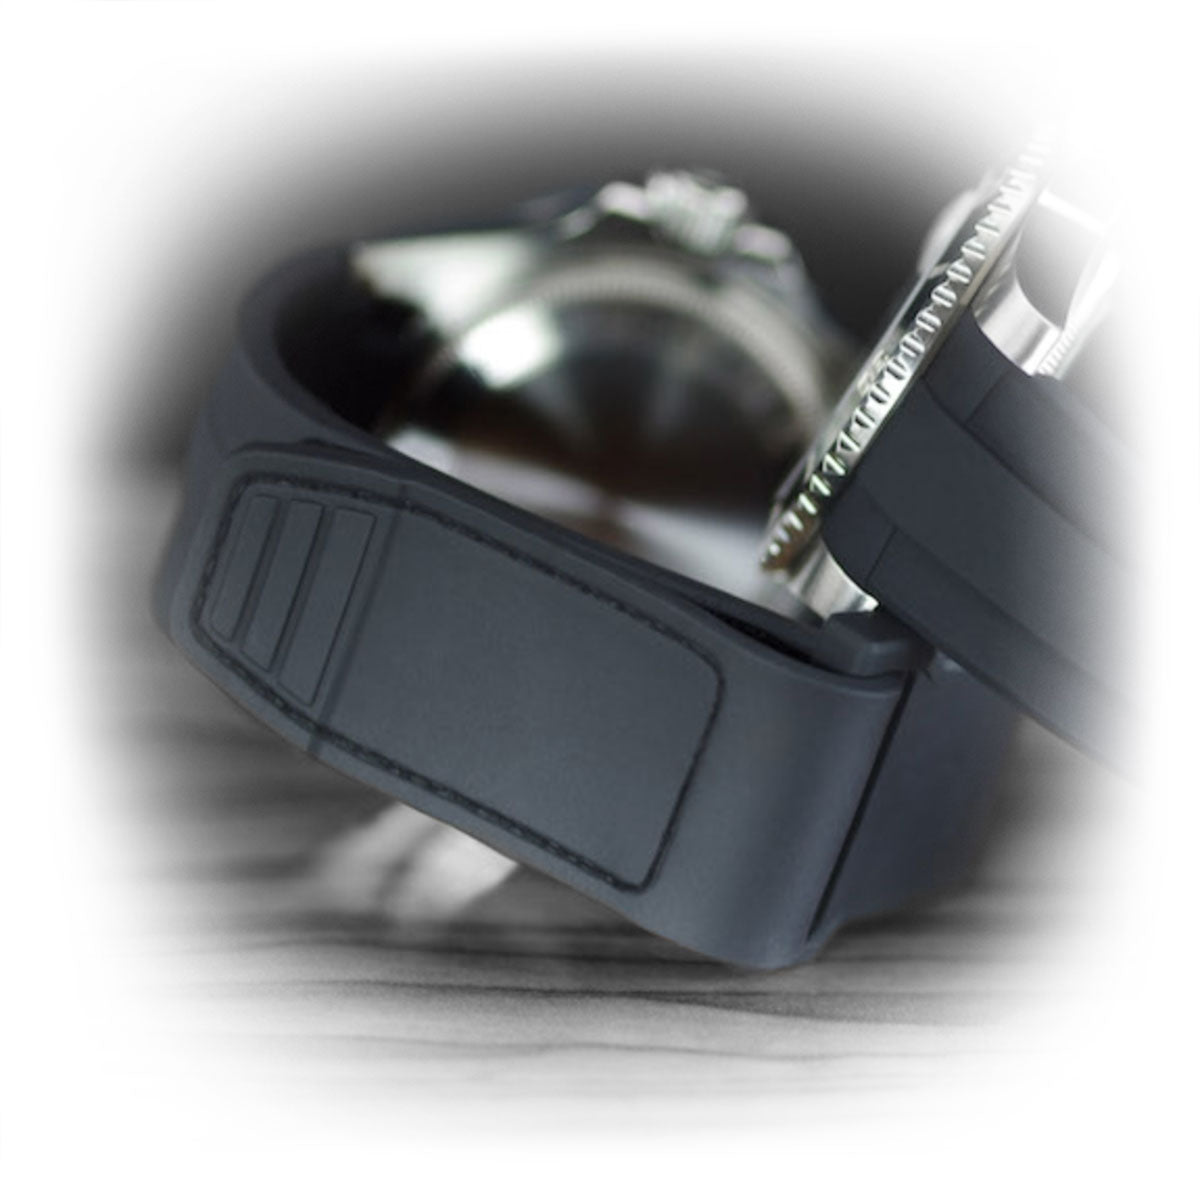 Rolex - Rubber B - Bracelet caoutchouc pour GMT Master - Velcro® Series - watch band leather strap - ABP Concept -